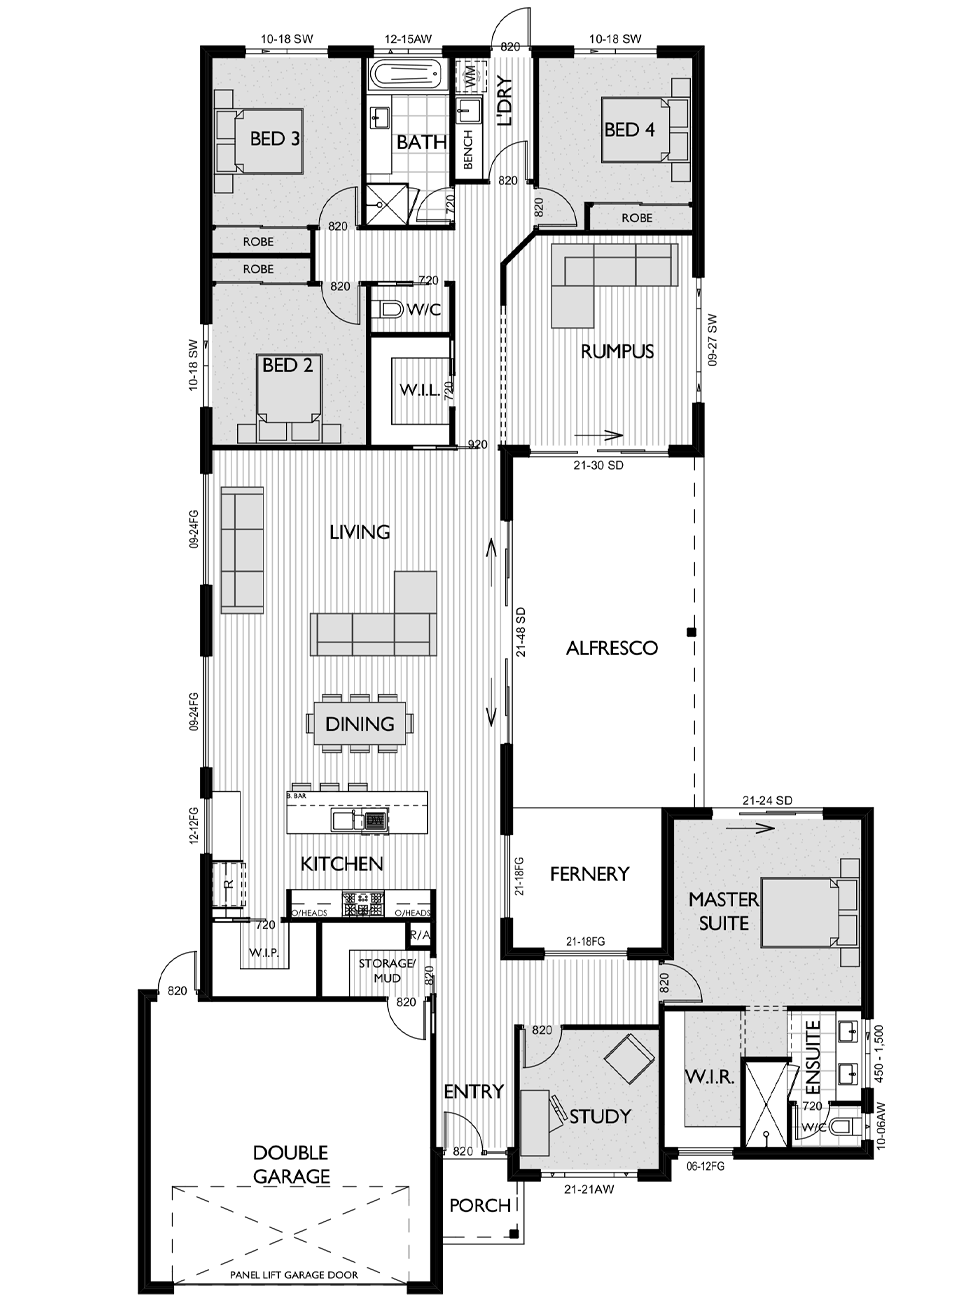 Floor Plan for Virtue Homes Munro 33 family home